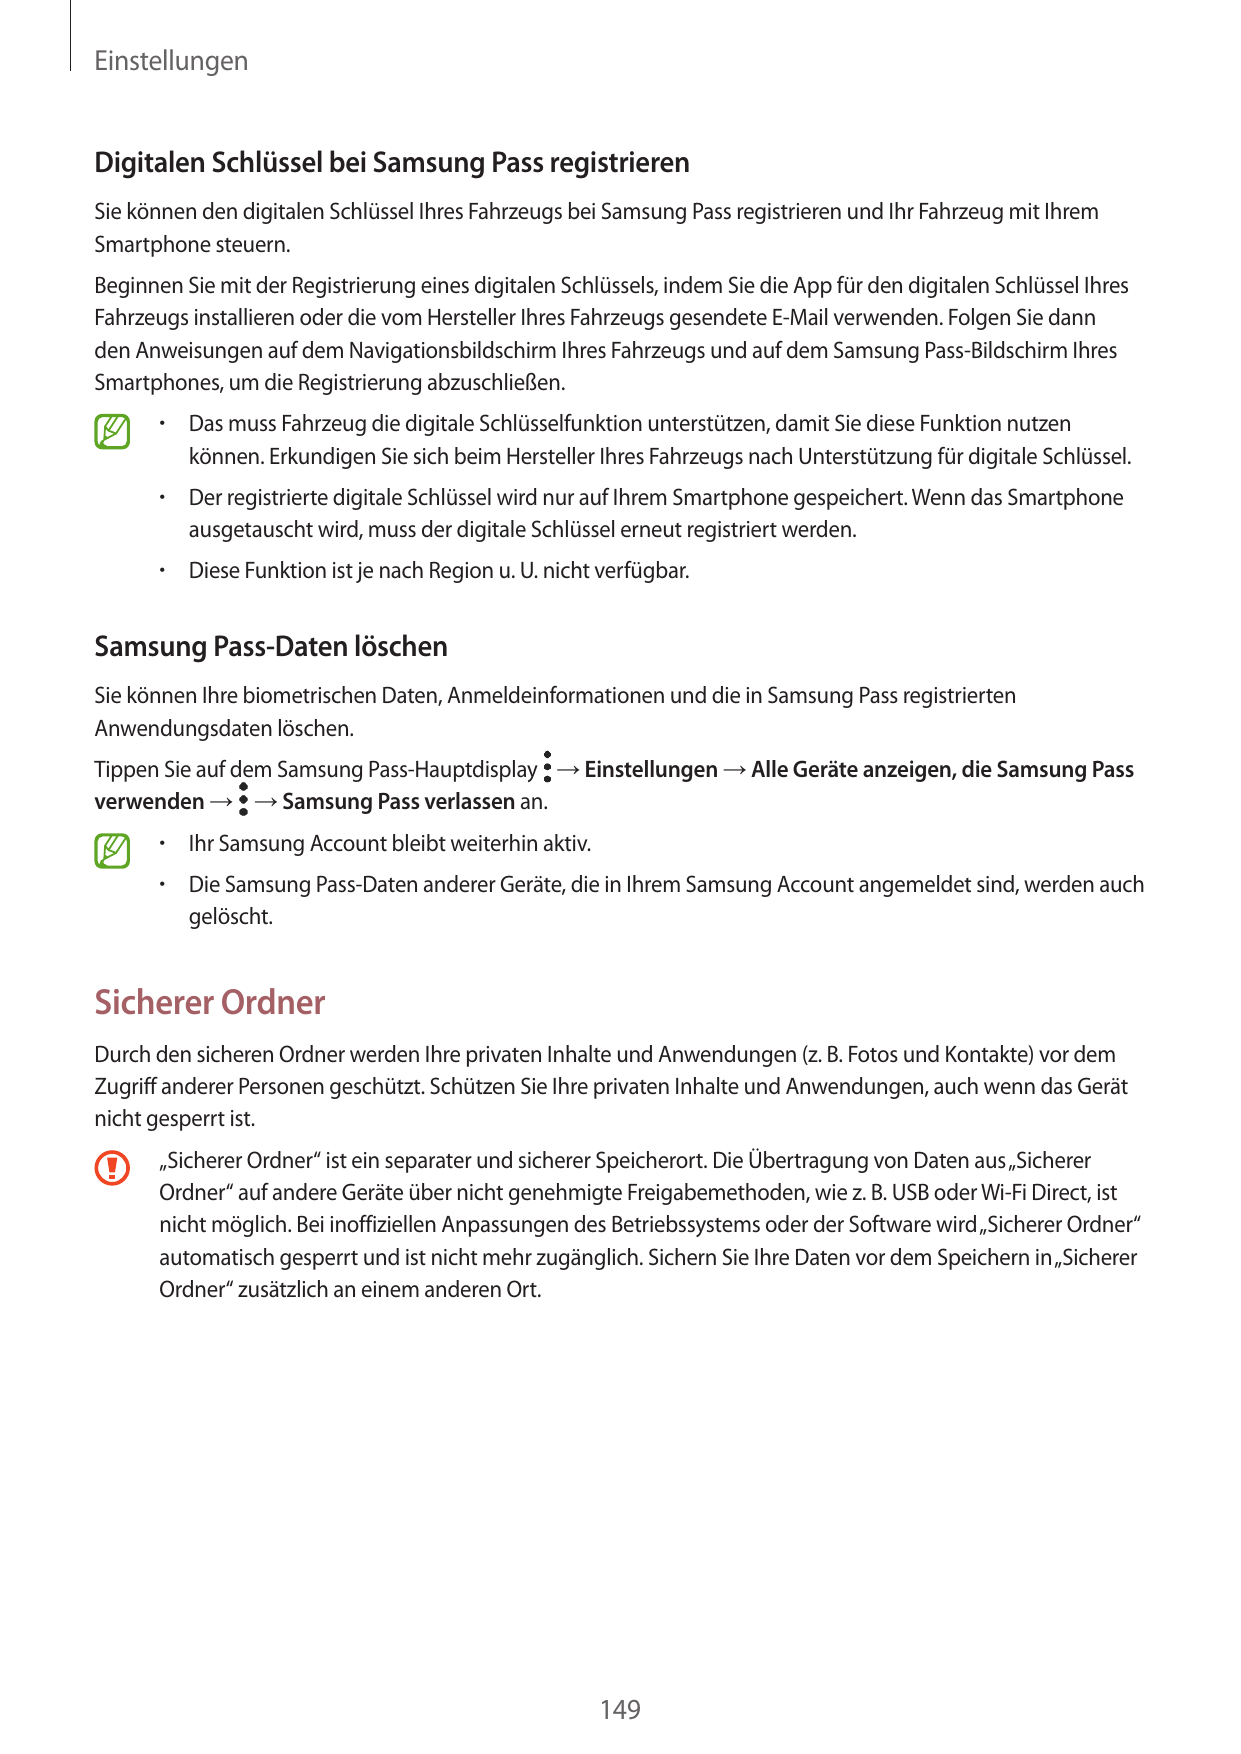 EinstellungenDigitalen Schlüssel bei Samsung Pass registrierenSie können den digitalen Schlüssel Ihres Fahrzeugs bei Samsung Pas